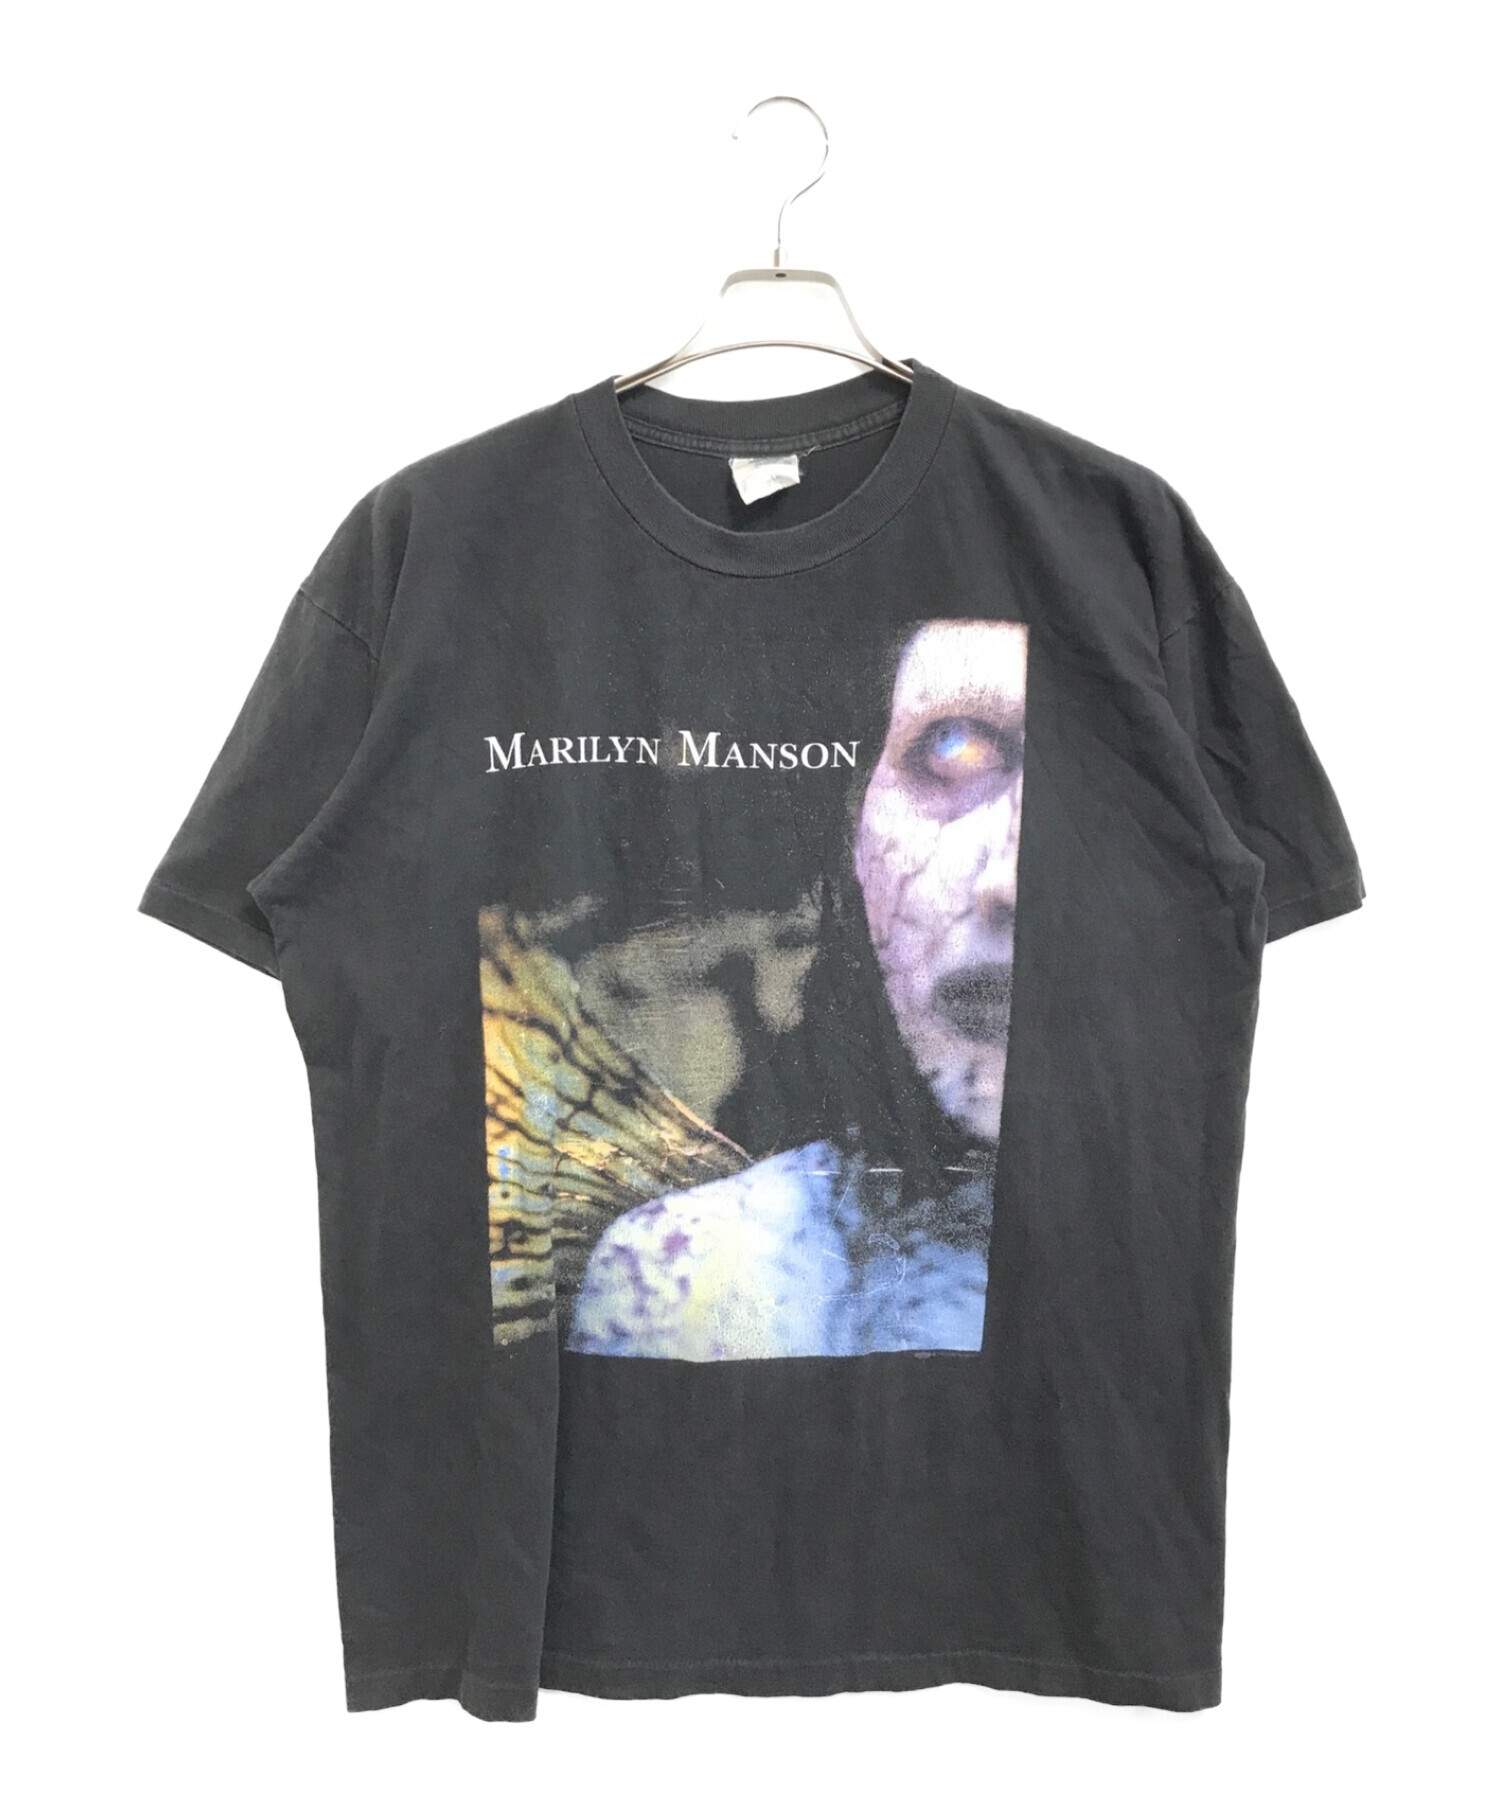 バンドTシャツ (バンドTシャツ) 90s MARILYN MANSON(マリリンマンソン) バンドTシャツ ブラック サイズ:XL